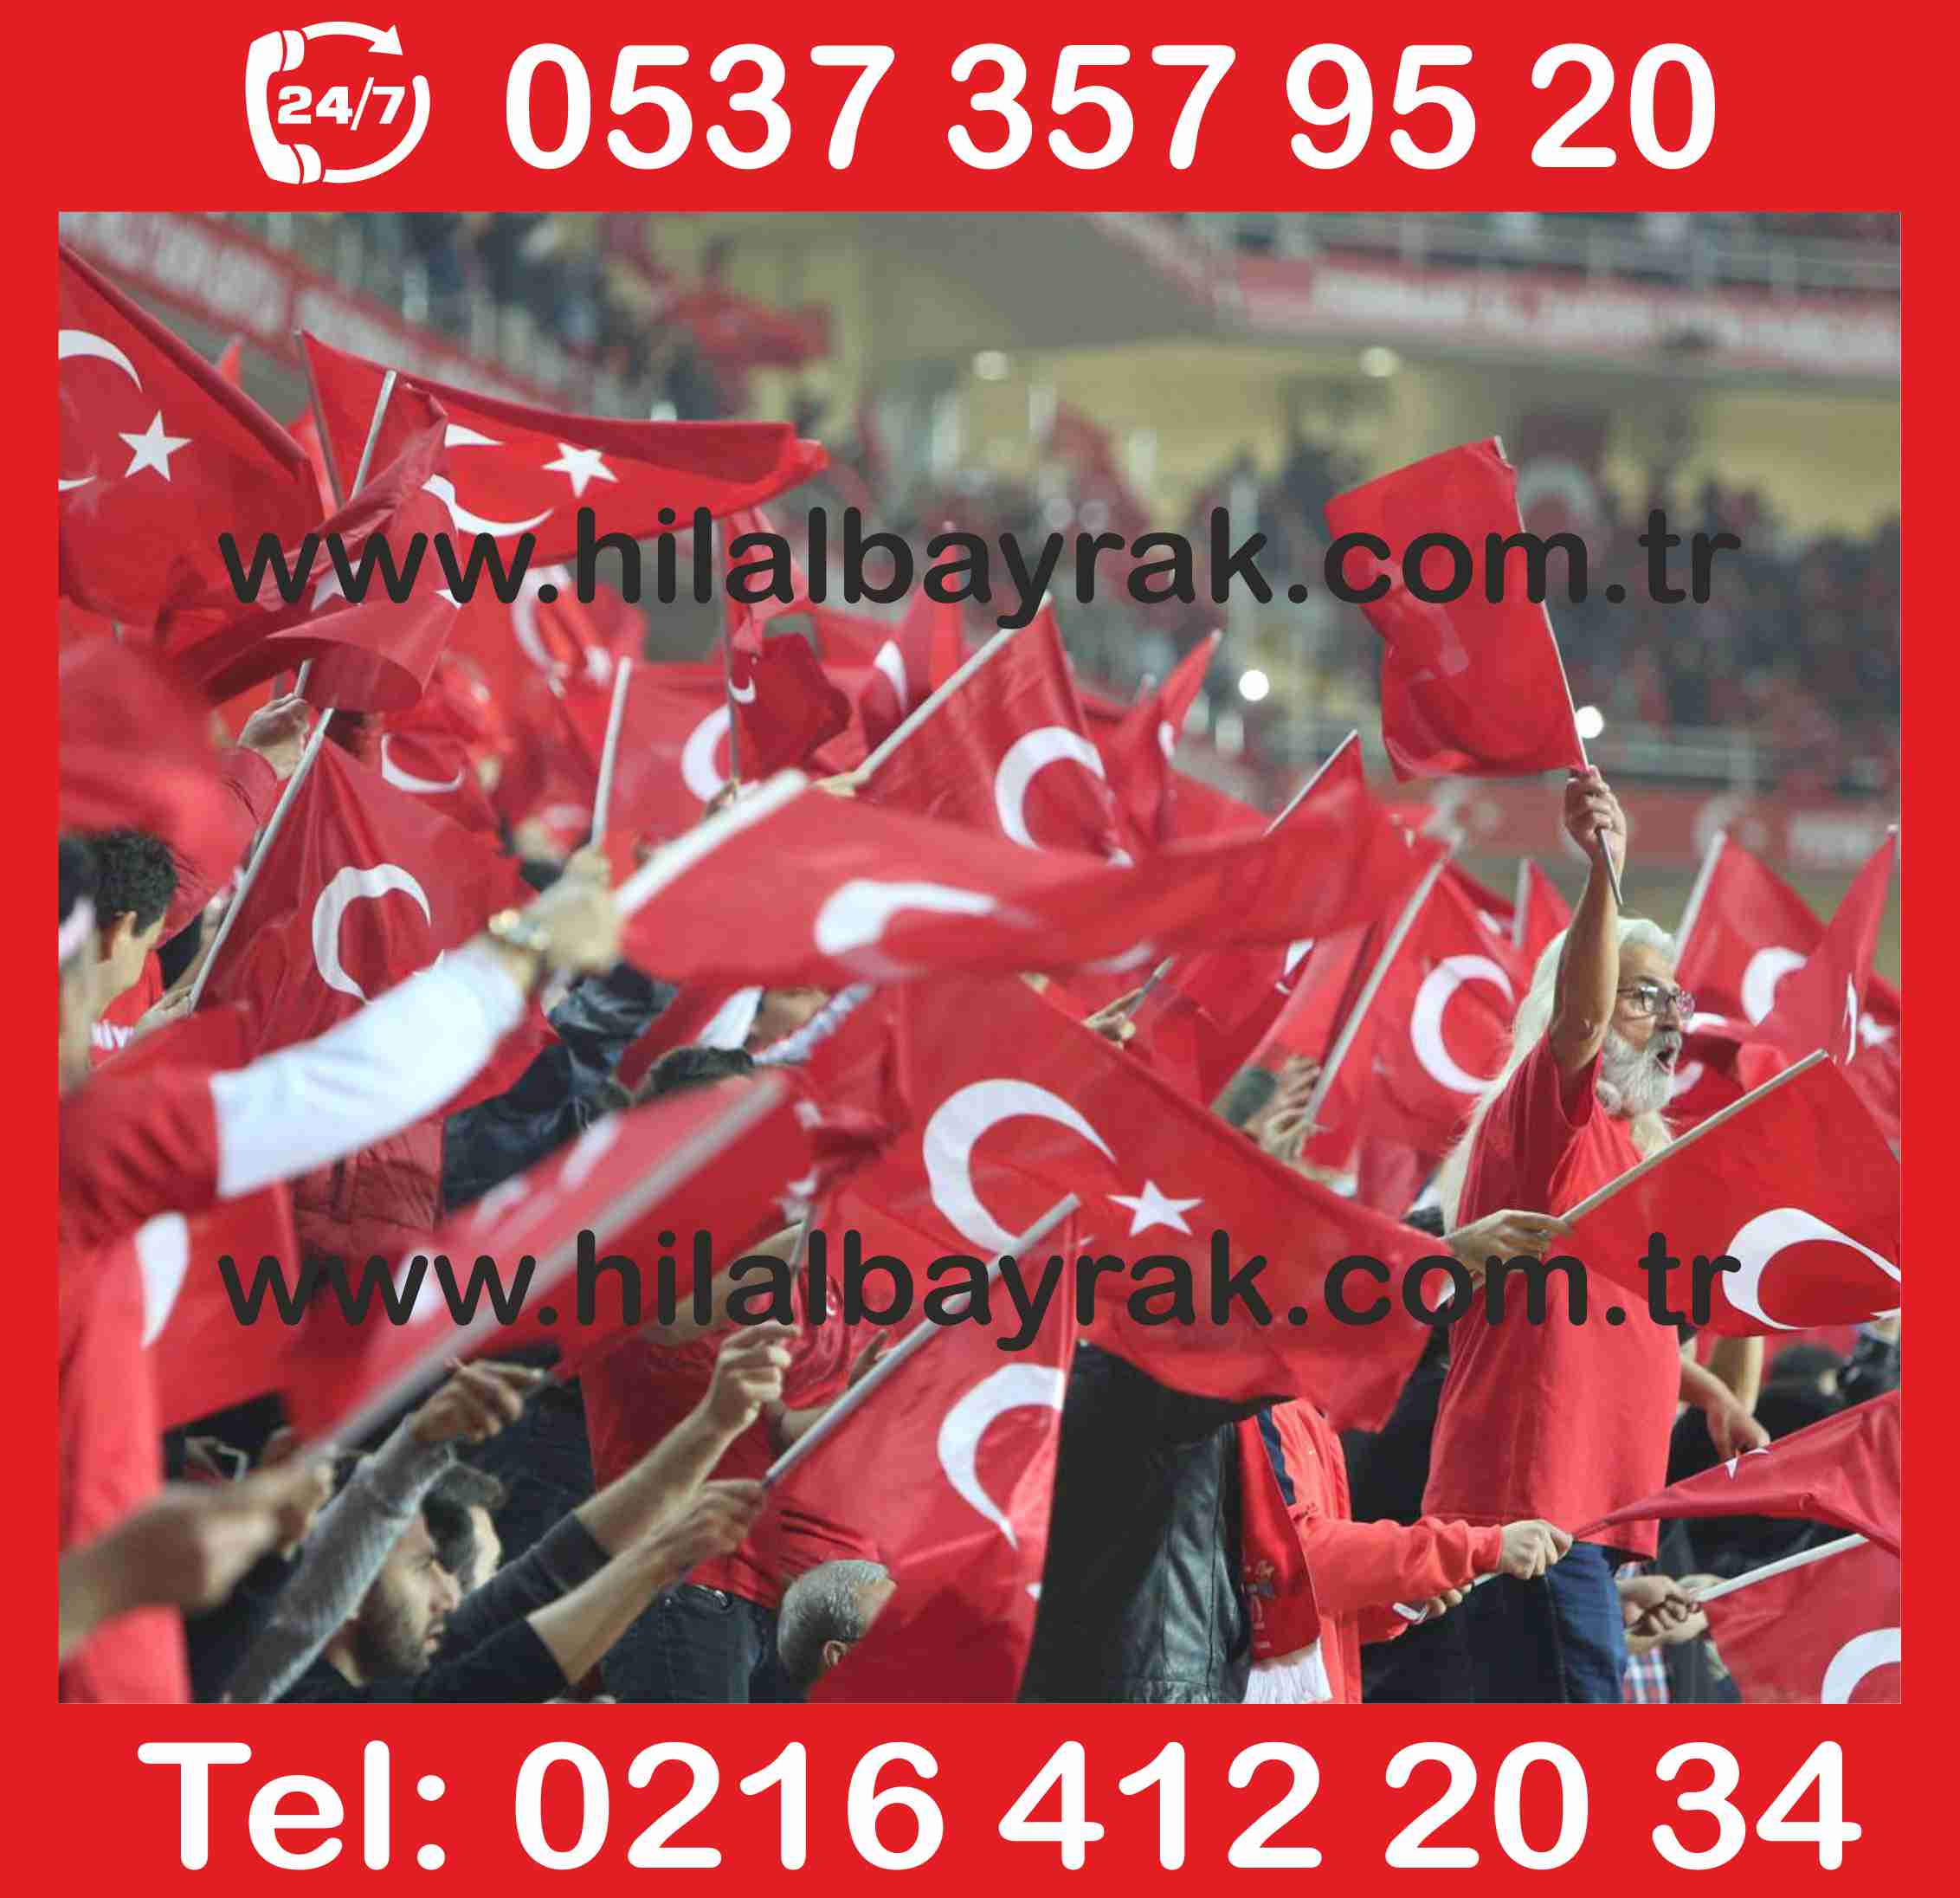 sopalı türk bayrağı, türk bayrak direği, türk bayrakları, türk bayrak, sopalı bayrağı fiyatı, türk bayrağı fiyatları, türk bayrağı, gönder türk bayrağı, türk bayrak İstanbu ümraniye